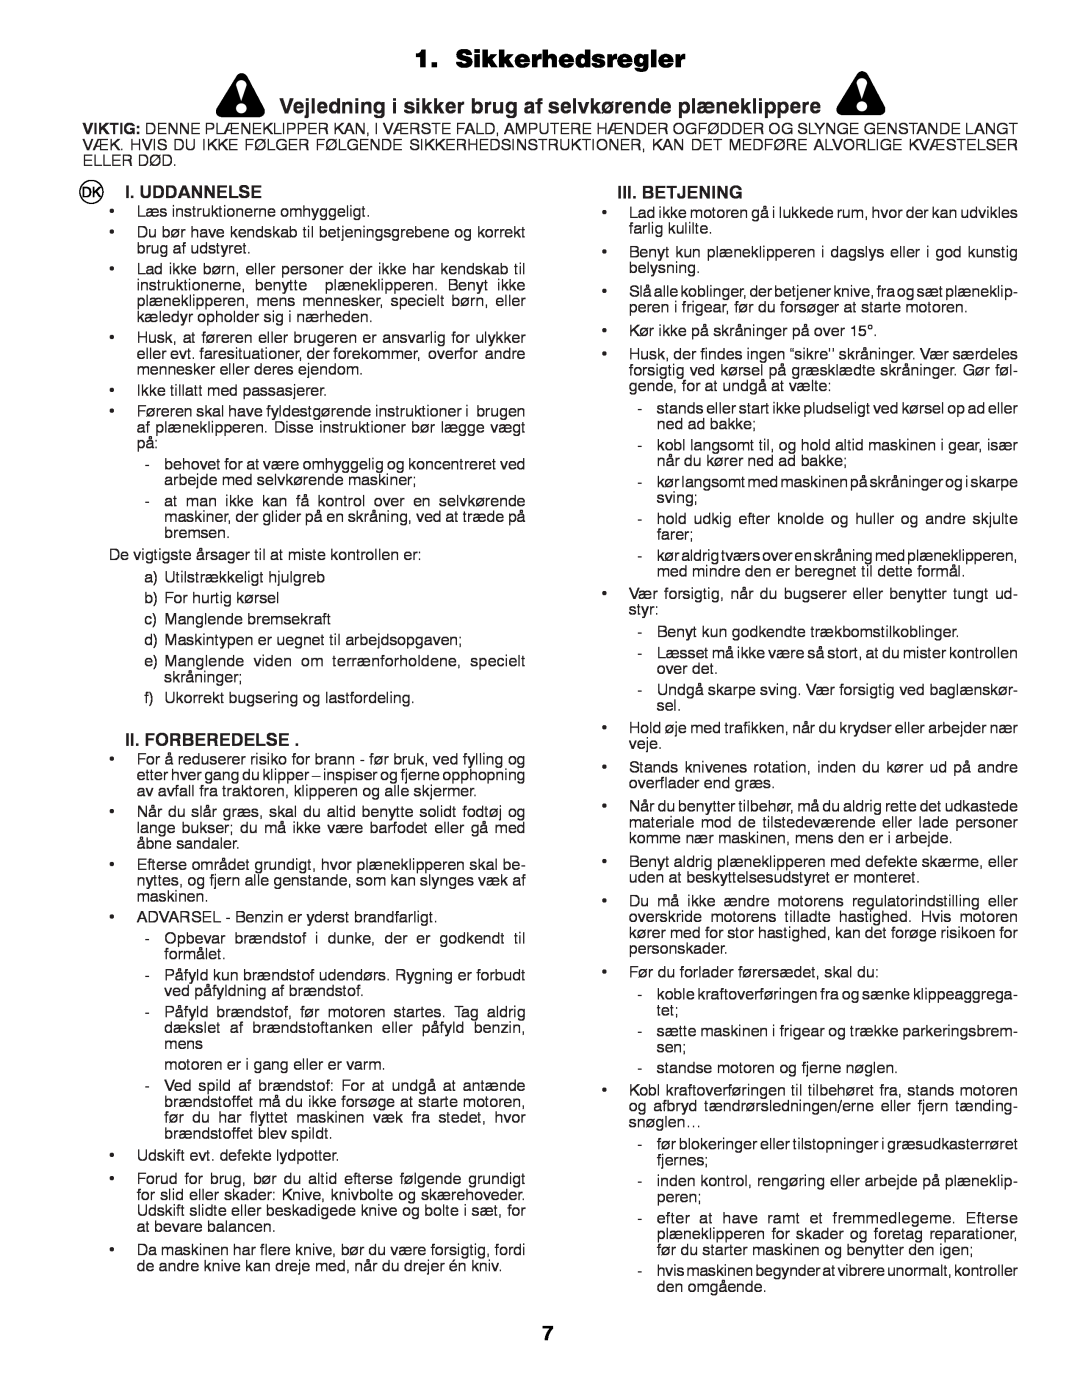 Partner Tech P145107 manual Sikkerhedsregler, I. Uddannelse, Ii. Forberedelse, Iii.Betjening 